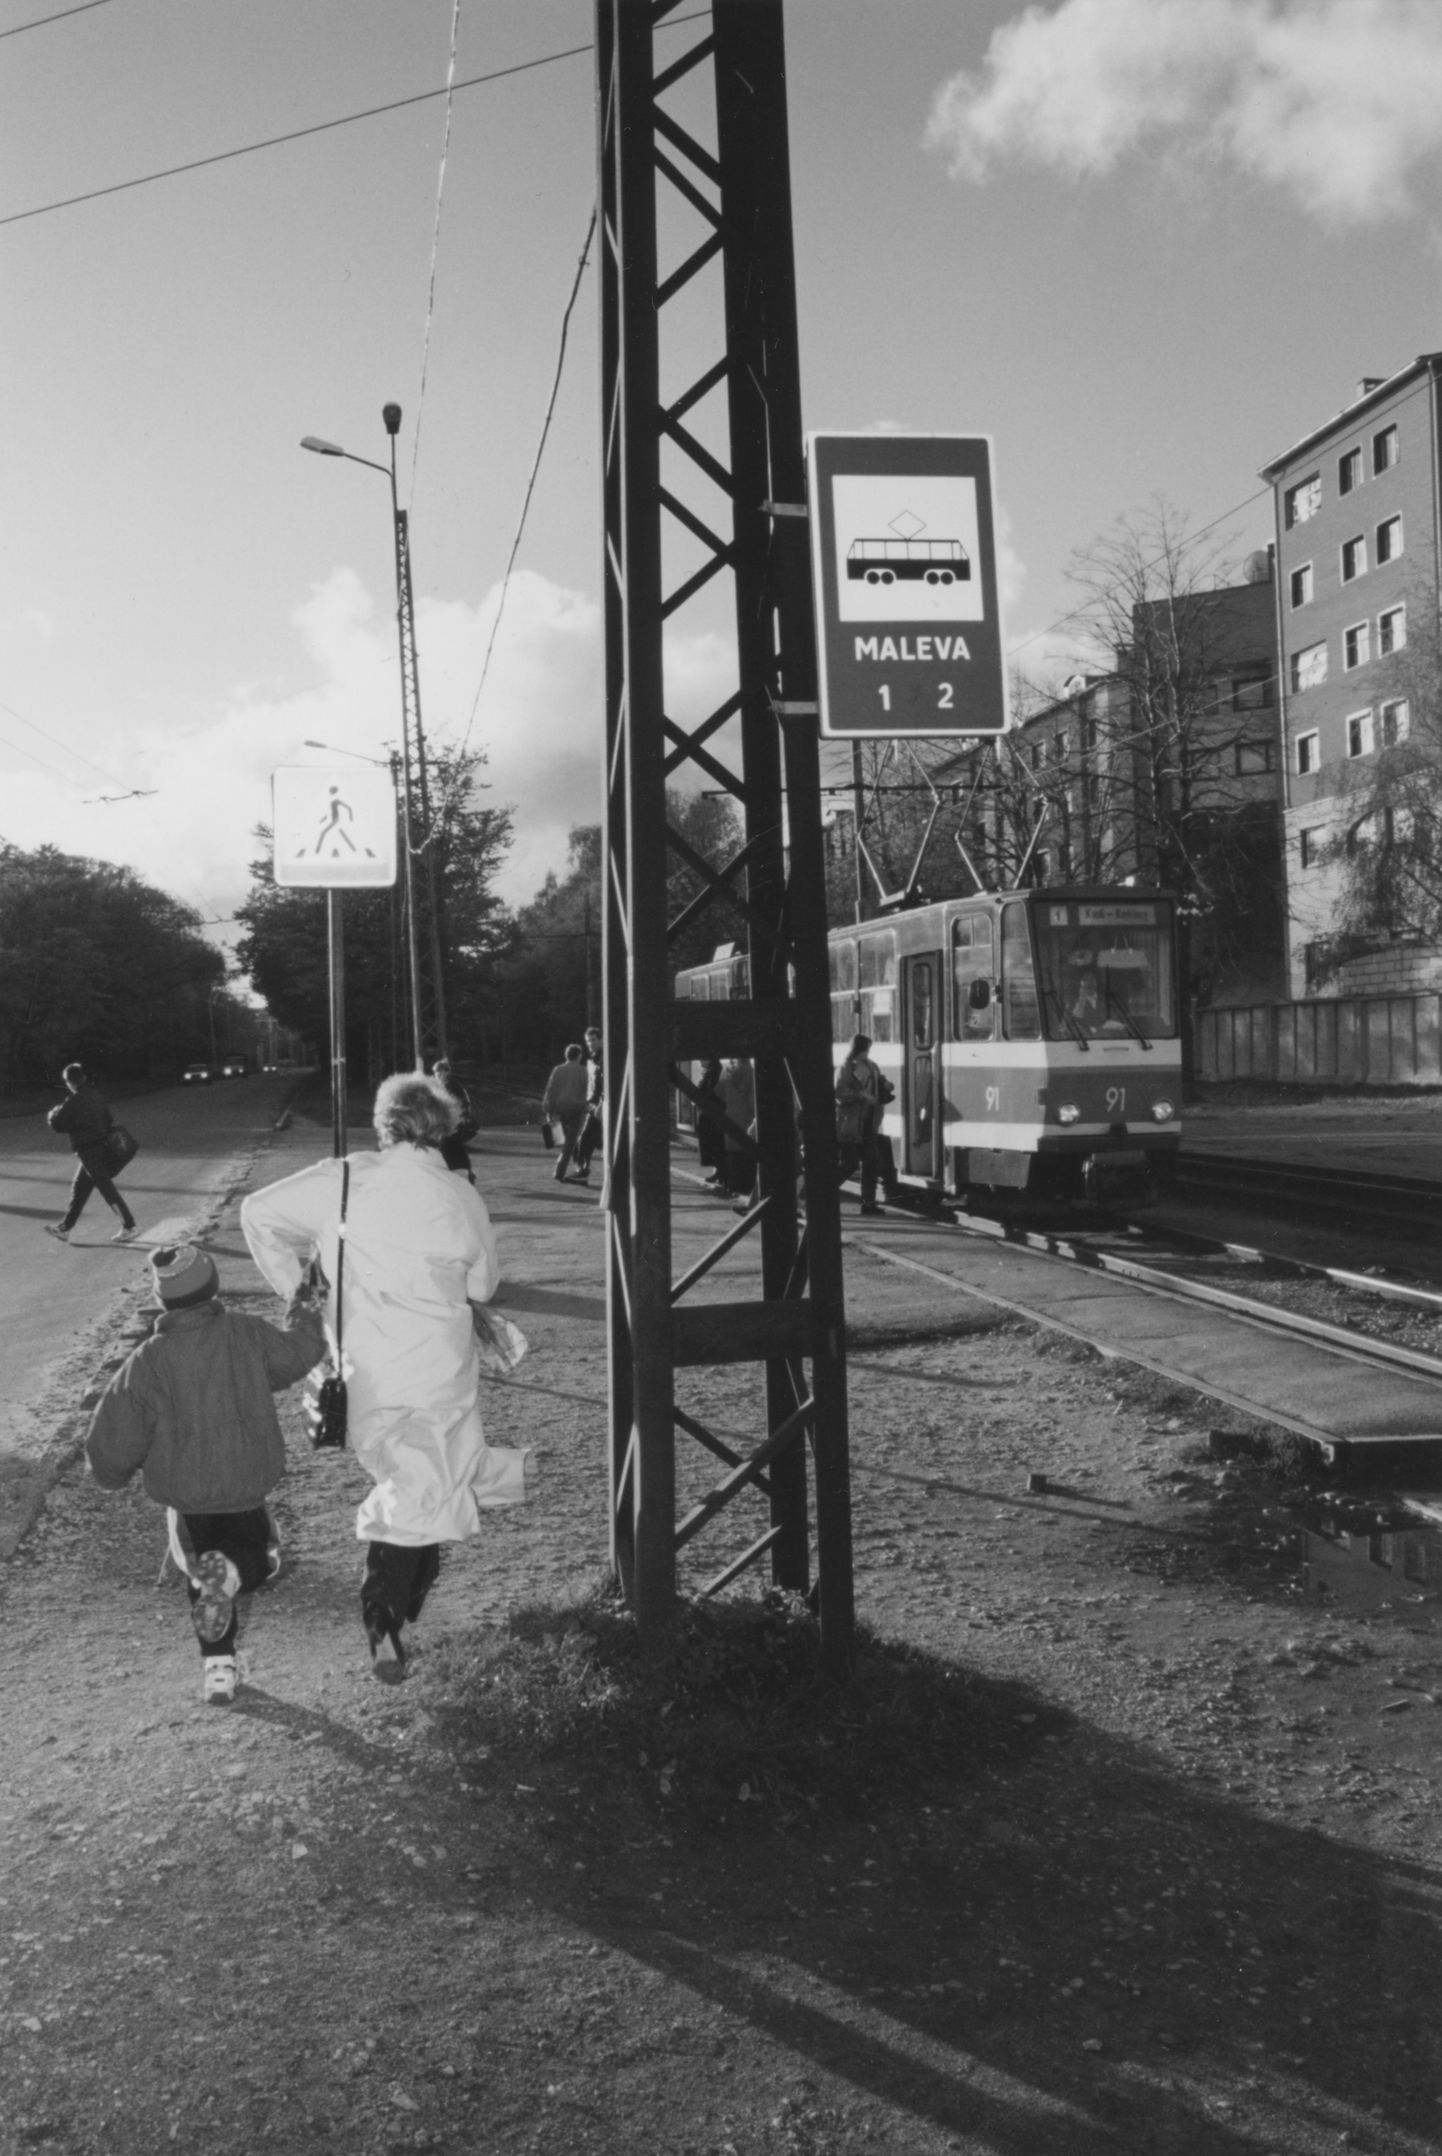 Трамвайная остановка "Малева" в 1997 году, снимок иллюстративный